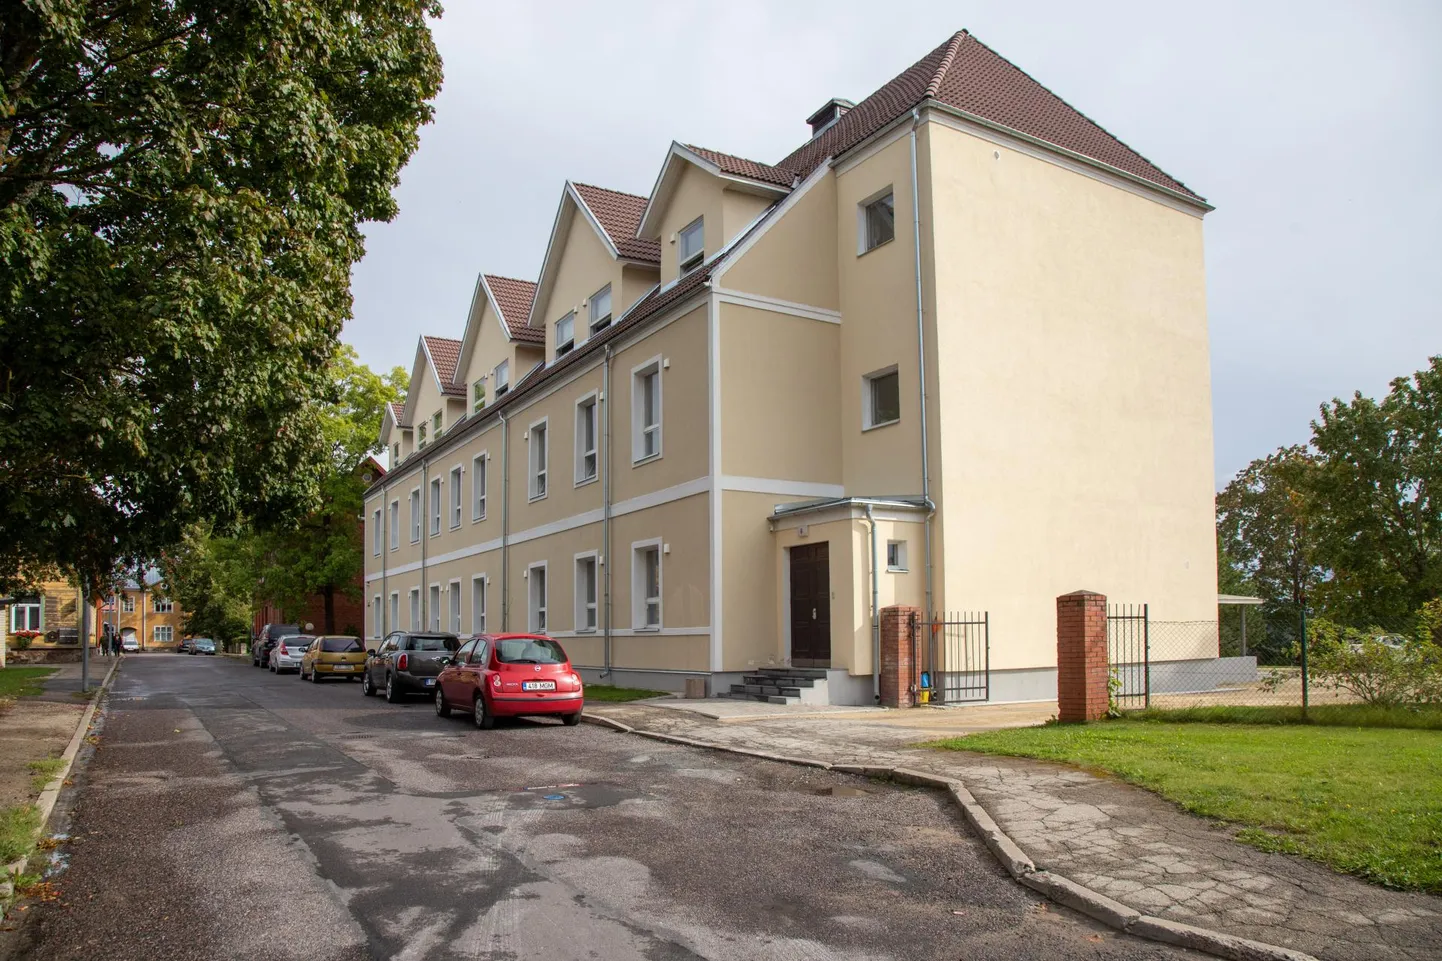 Üks kahest Viljandi üliõpilaselamust on aadressil Väike tänav 6 ja seal maksab kõige odavam koht kahekohalises toas 102 eurot kuus.